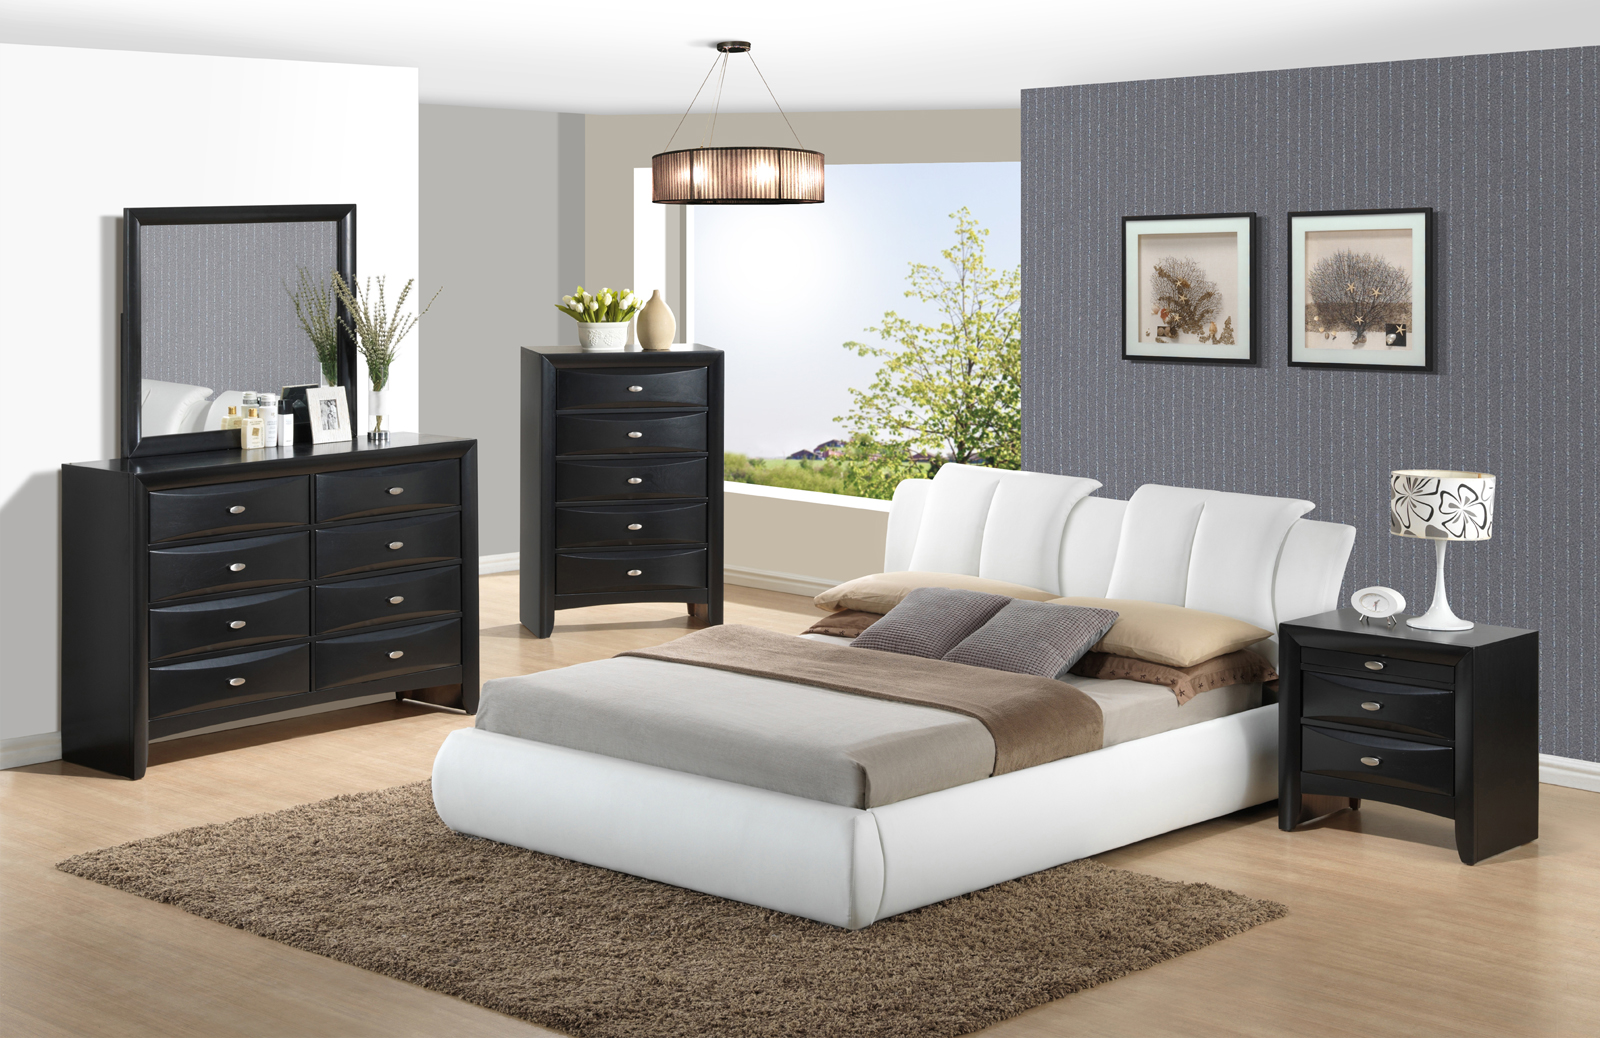 global furniture usa bedroom set